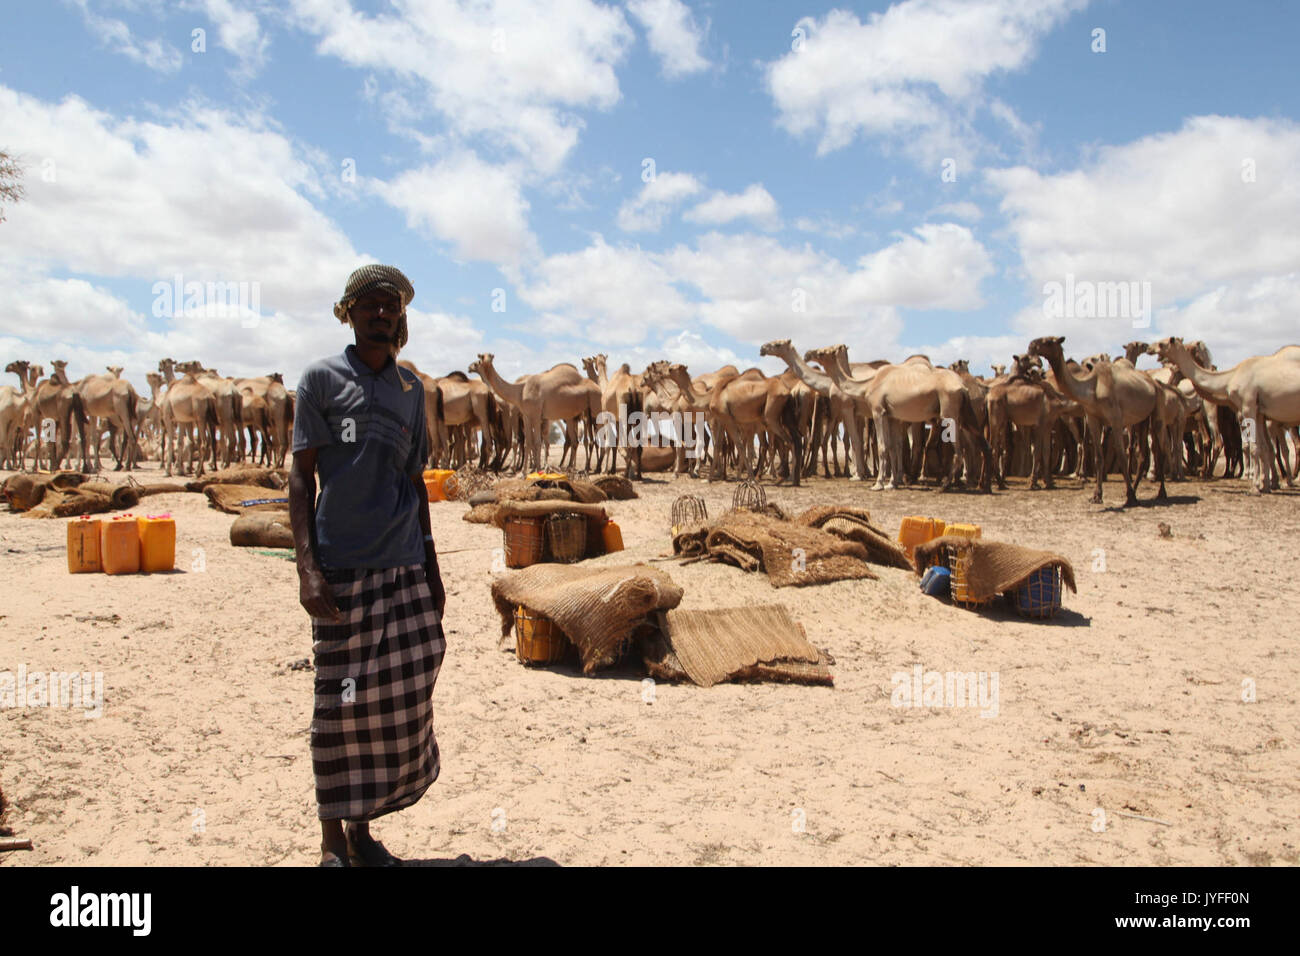 Un homme se tient debout devant un groupe de chameaux dans la ville d'Adale, en Somalie. Des soldats burundais, dans le cadre de la Mission de l'Union africaine en Somalie, hier, ont libéré la ville d'Adale dans l'(15411750086) Banque D'Images